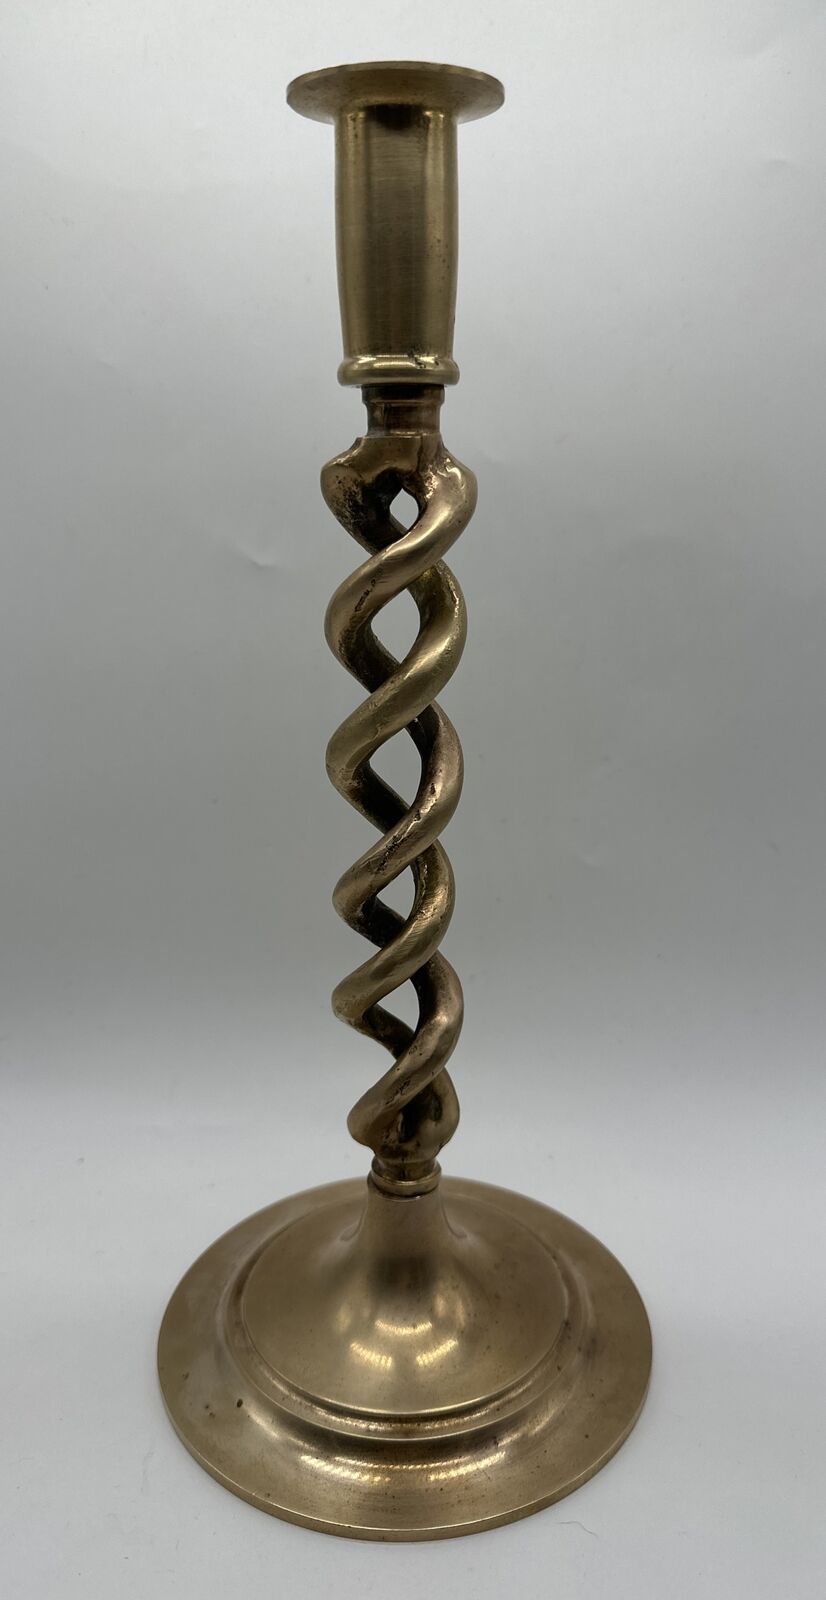 Antique Open Spiral Barley Twist Brass Taper Candlestick Holder 11.25” Tall